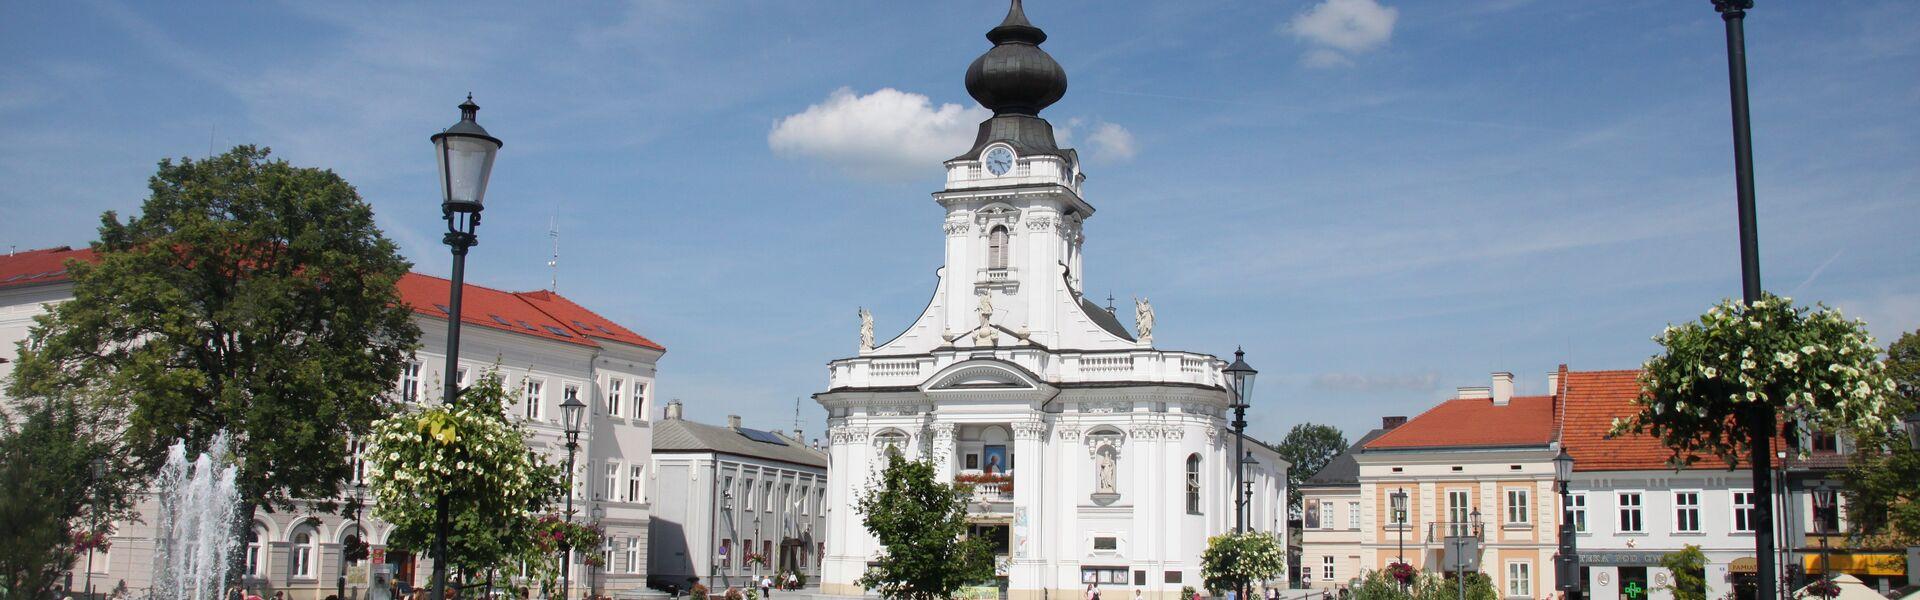 Rynek w Wadowicach, widok na biały kościół i plac przed nim i kamienice, spacerujący ludzie